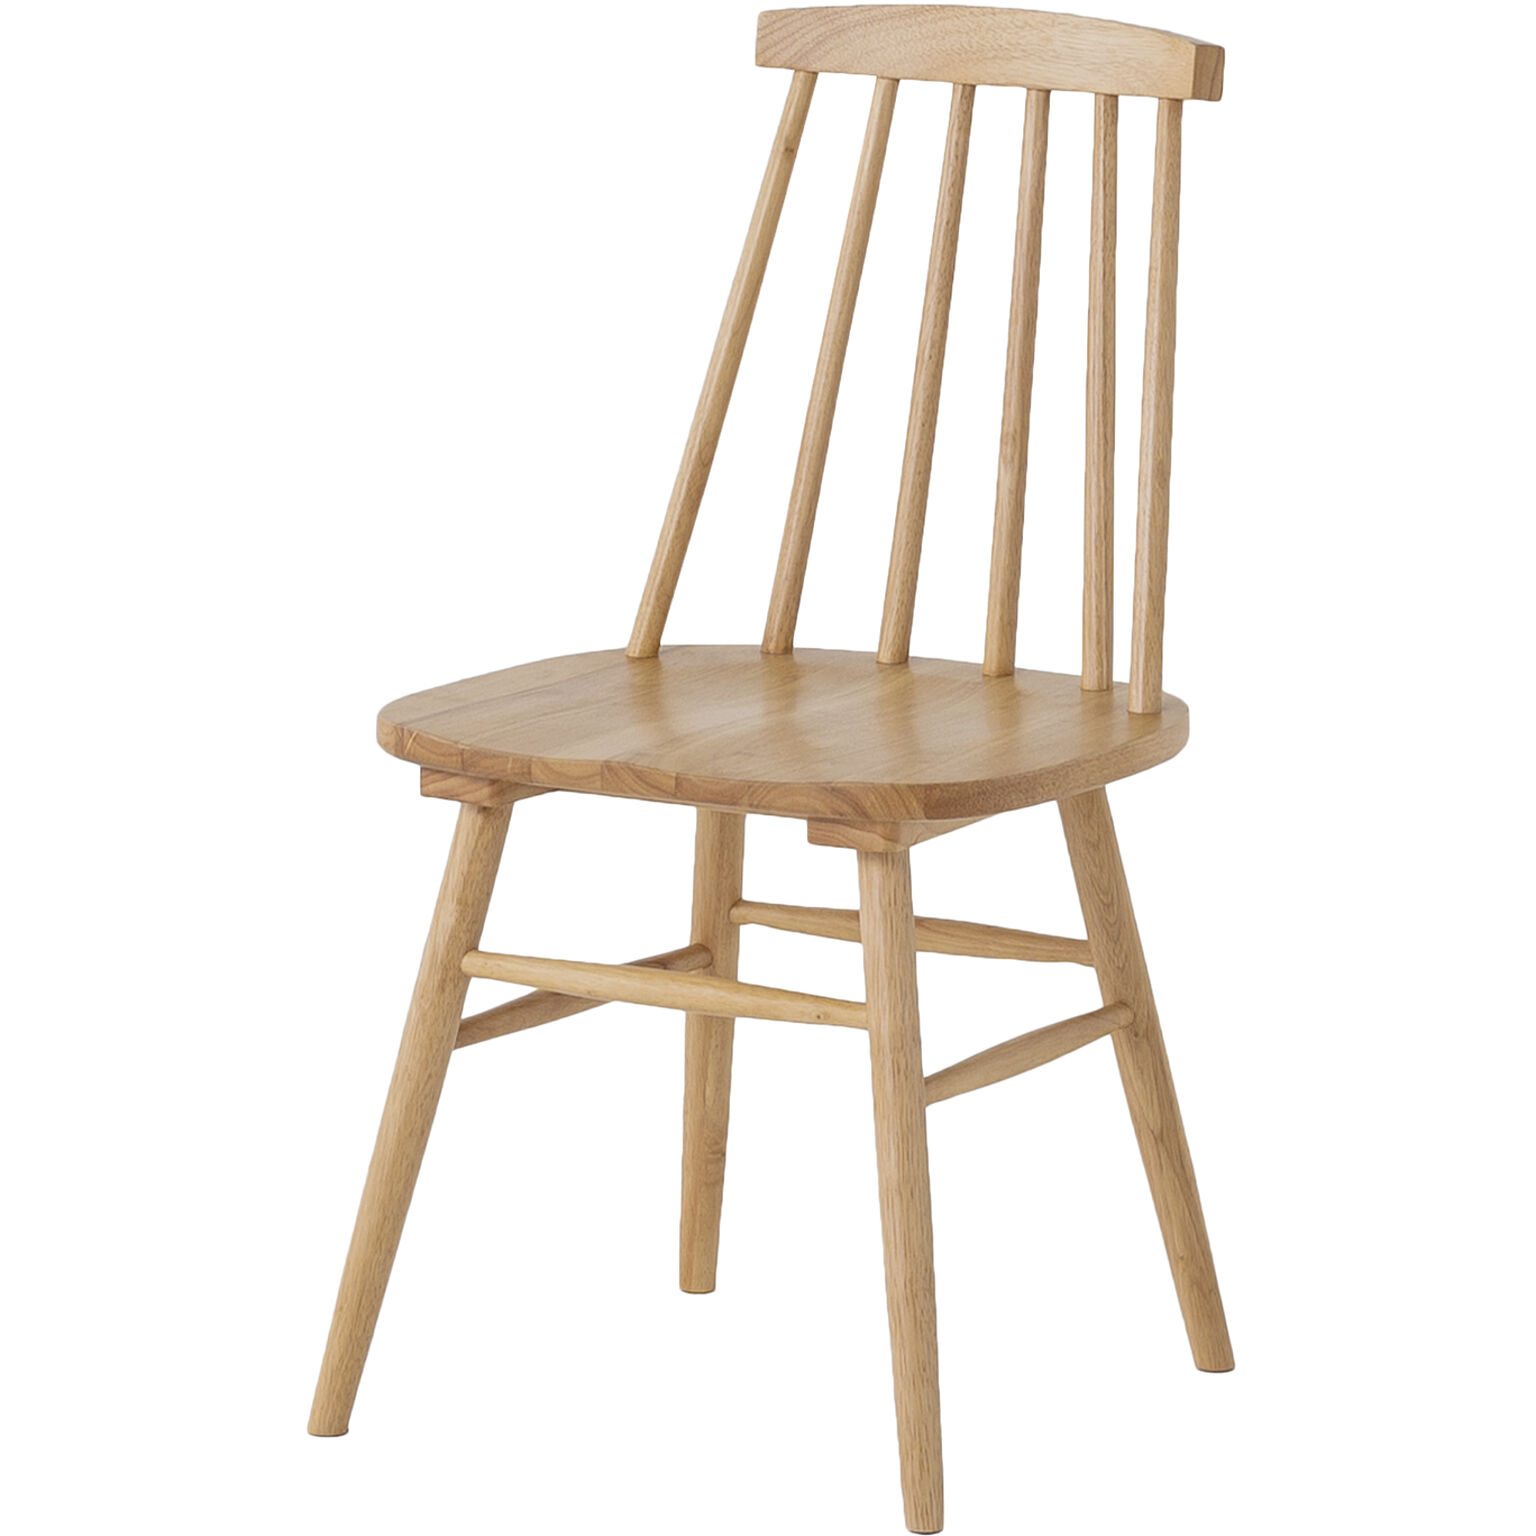 ダイニングチェア 2脚セット ウィンザーチェア チェアー 椅子 いす イス おしゃれ 木製 無垢 ナチュラル 北欧 レトロ 高級 カントリー 韓国インテリア 板座